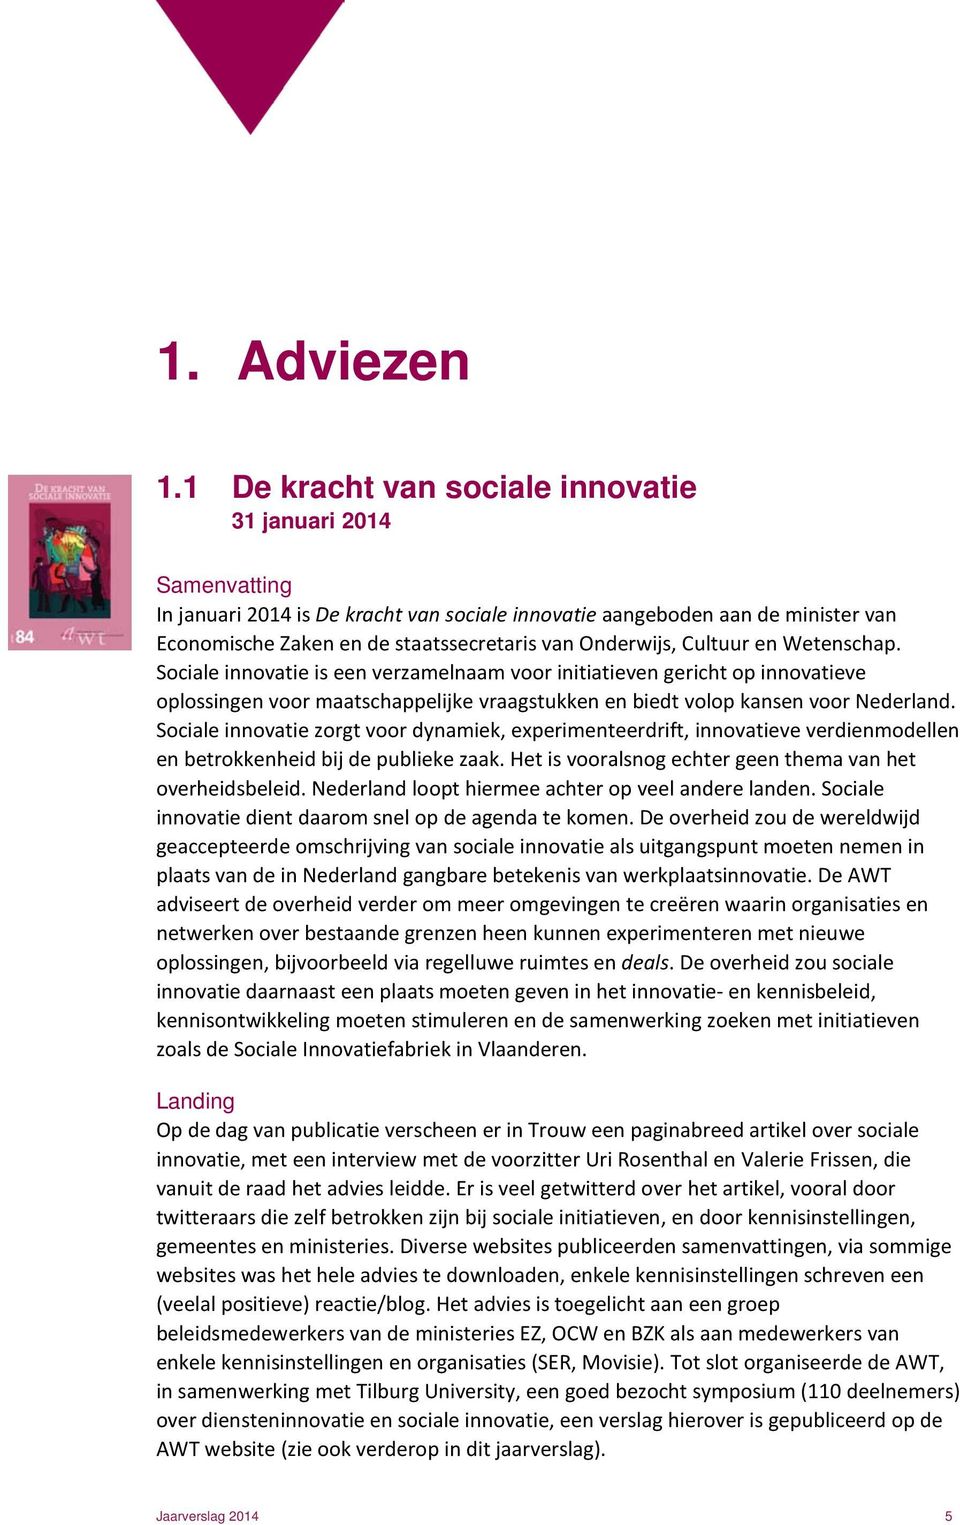 Onderwijs, Cultuur en Wetenschap. Sociale innovatie is een verzamelnaam voor initiatieven gericht op innovatieve oplossingen voor maatschappelijke vraagstukken en biedt volop kansen voor Nederland.